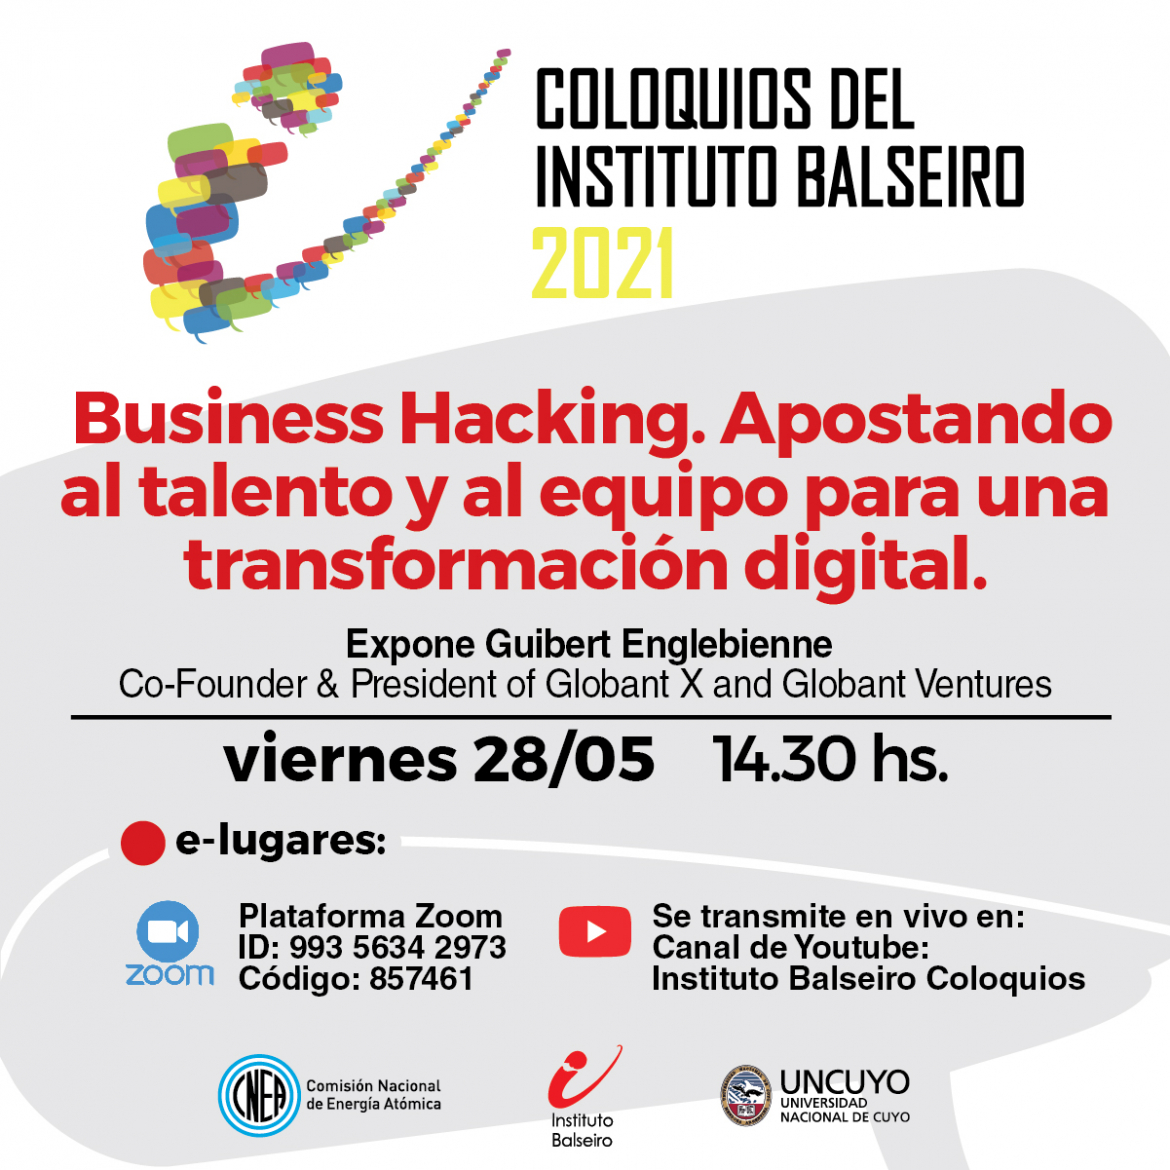 COLOQUIO DEL VIERNES 28/5 -- Business Hacking. Apostando al talento y al equipo para una transformación digital